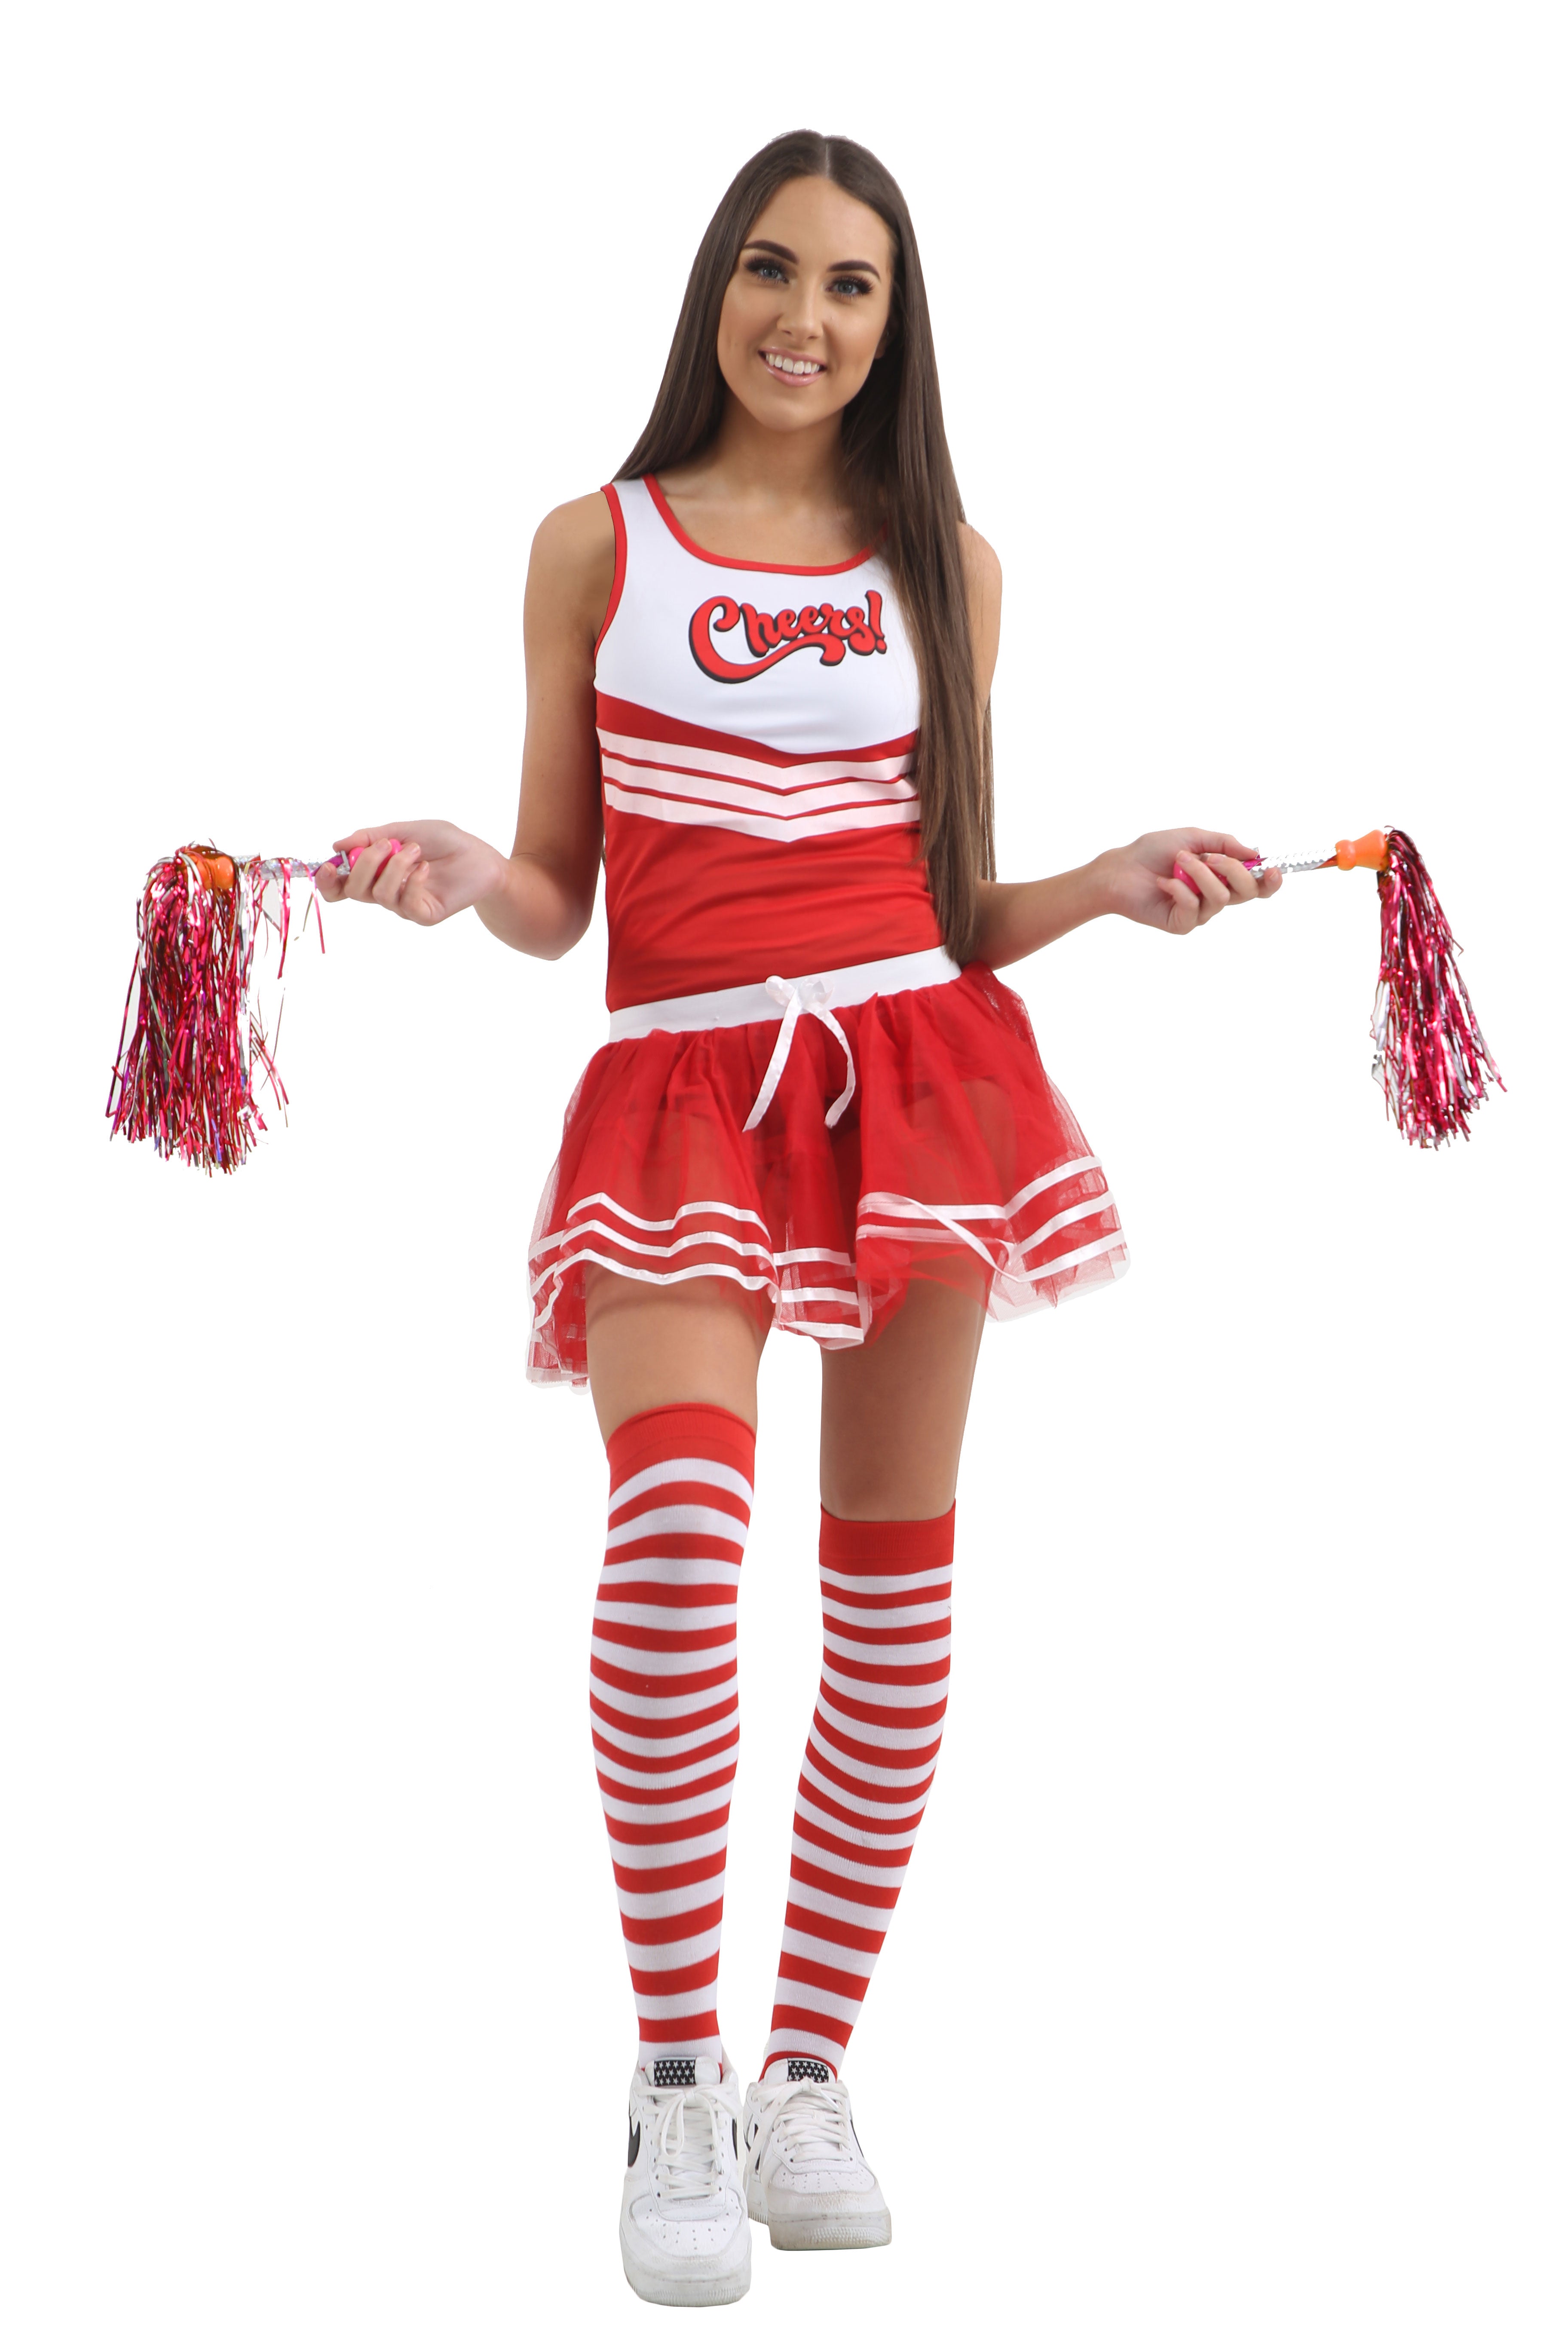 Crazy Chick Cheerleader Vest & Top